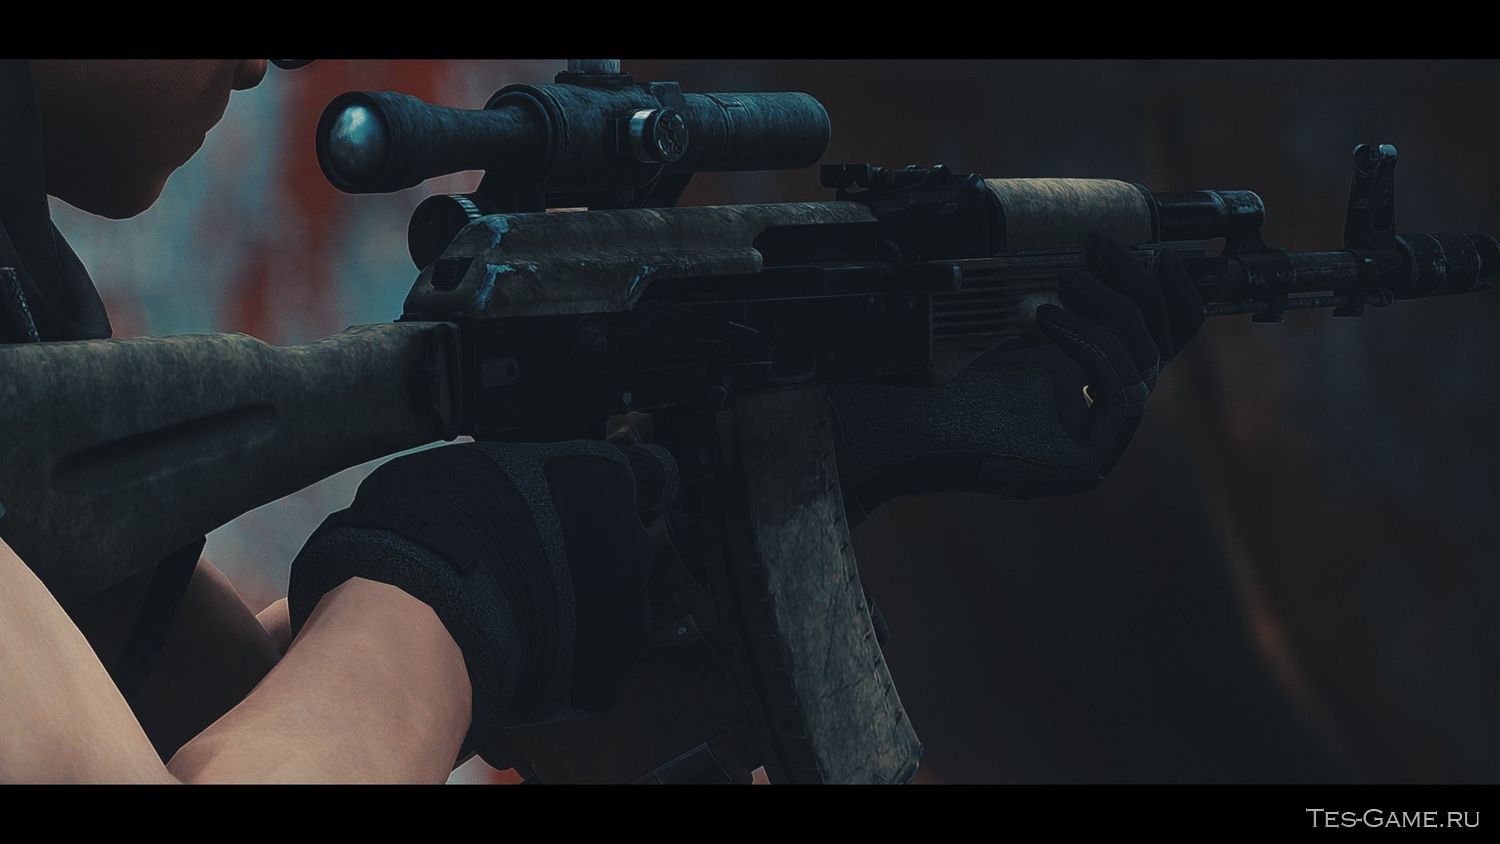 Требования: Fallout 4 + DLC Nuka World + AK74M - Assault Rifle. 